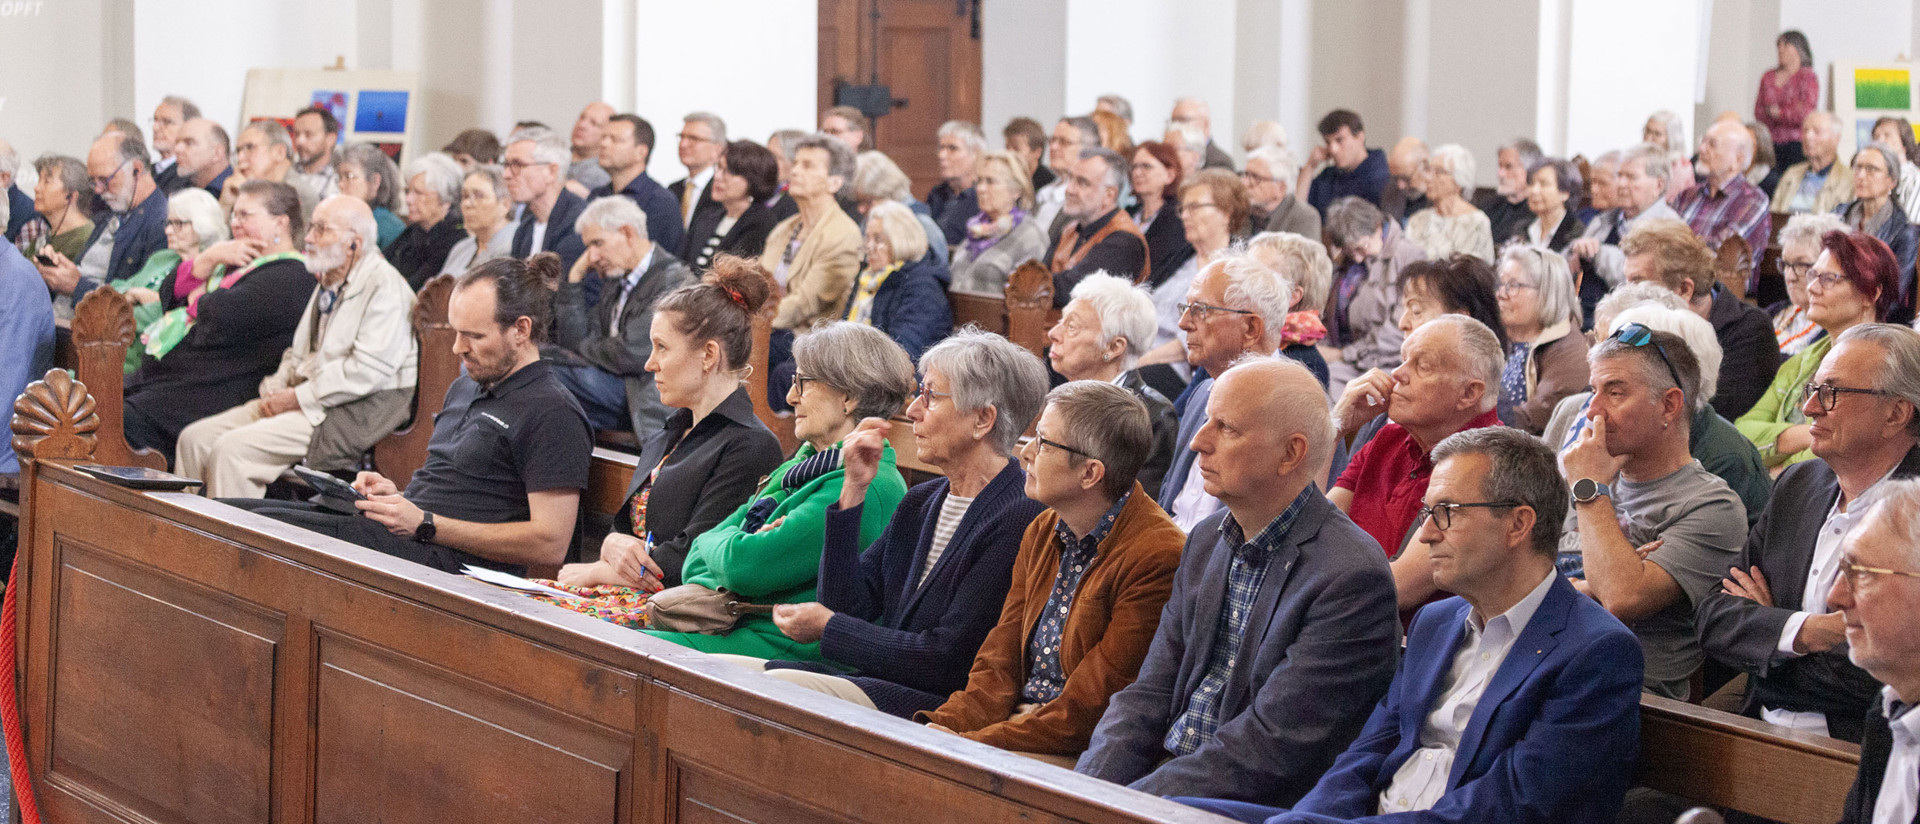 An der Wählerversammlung der Christkatholiken am 13. April in Olten nahmen Synodale und Laien teil.